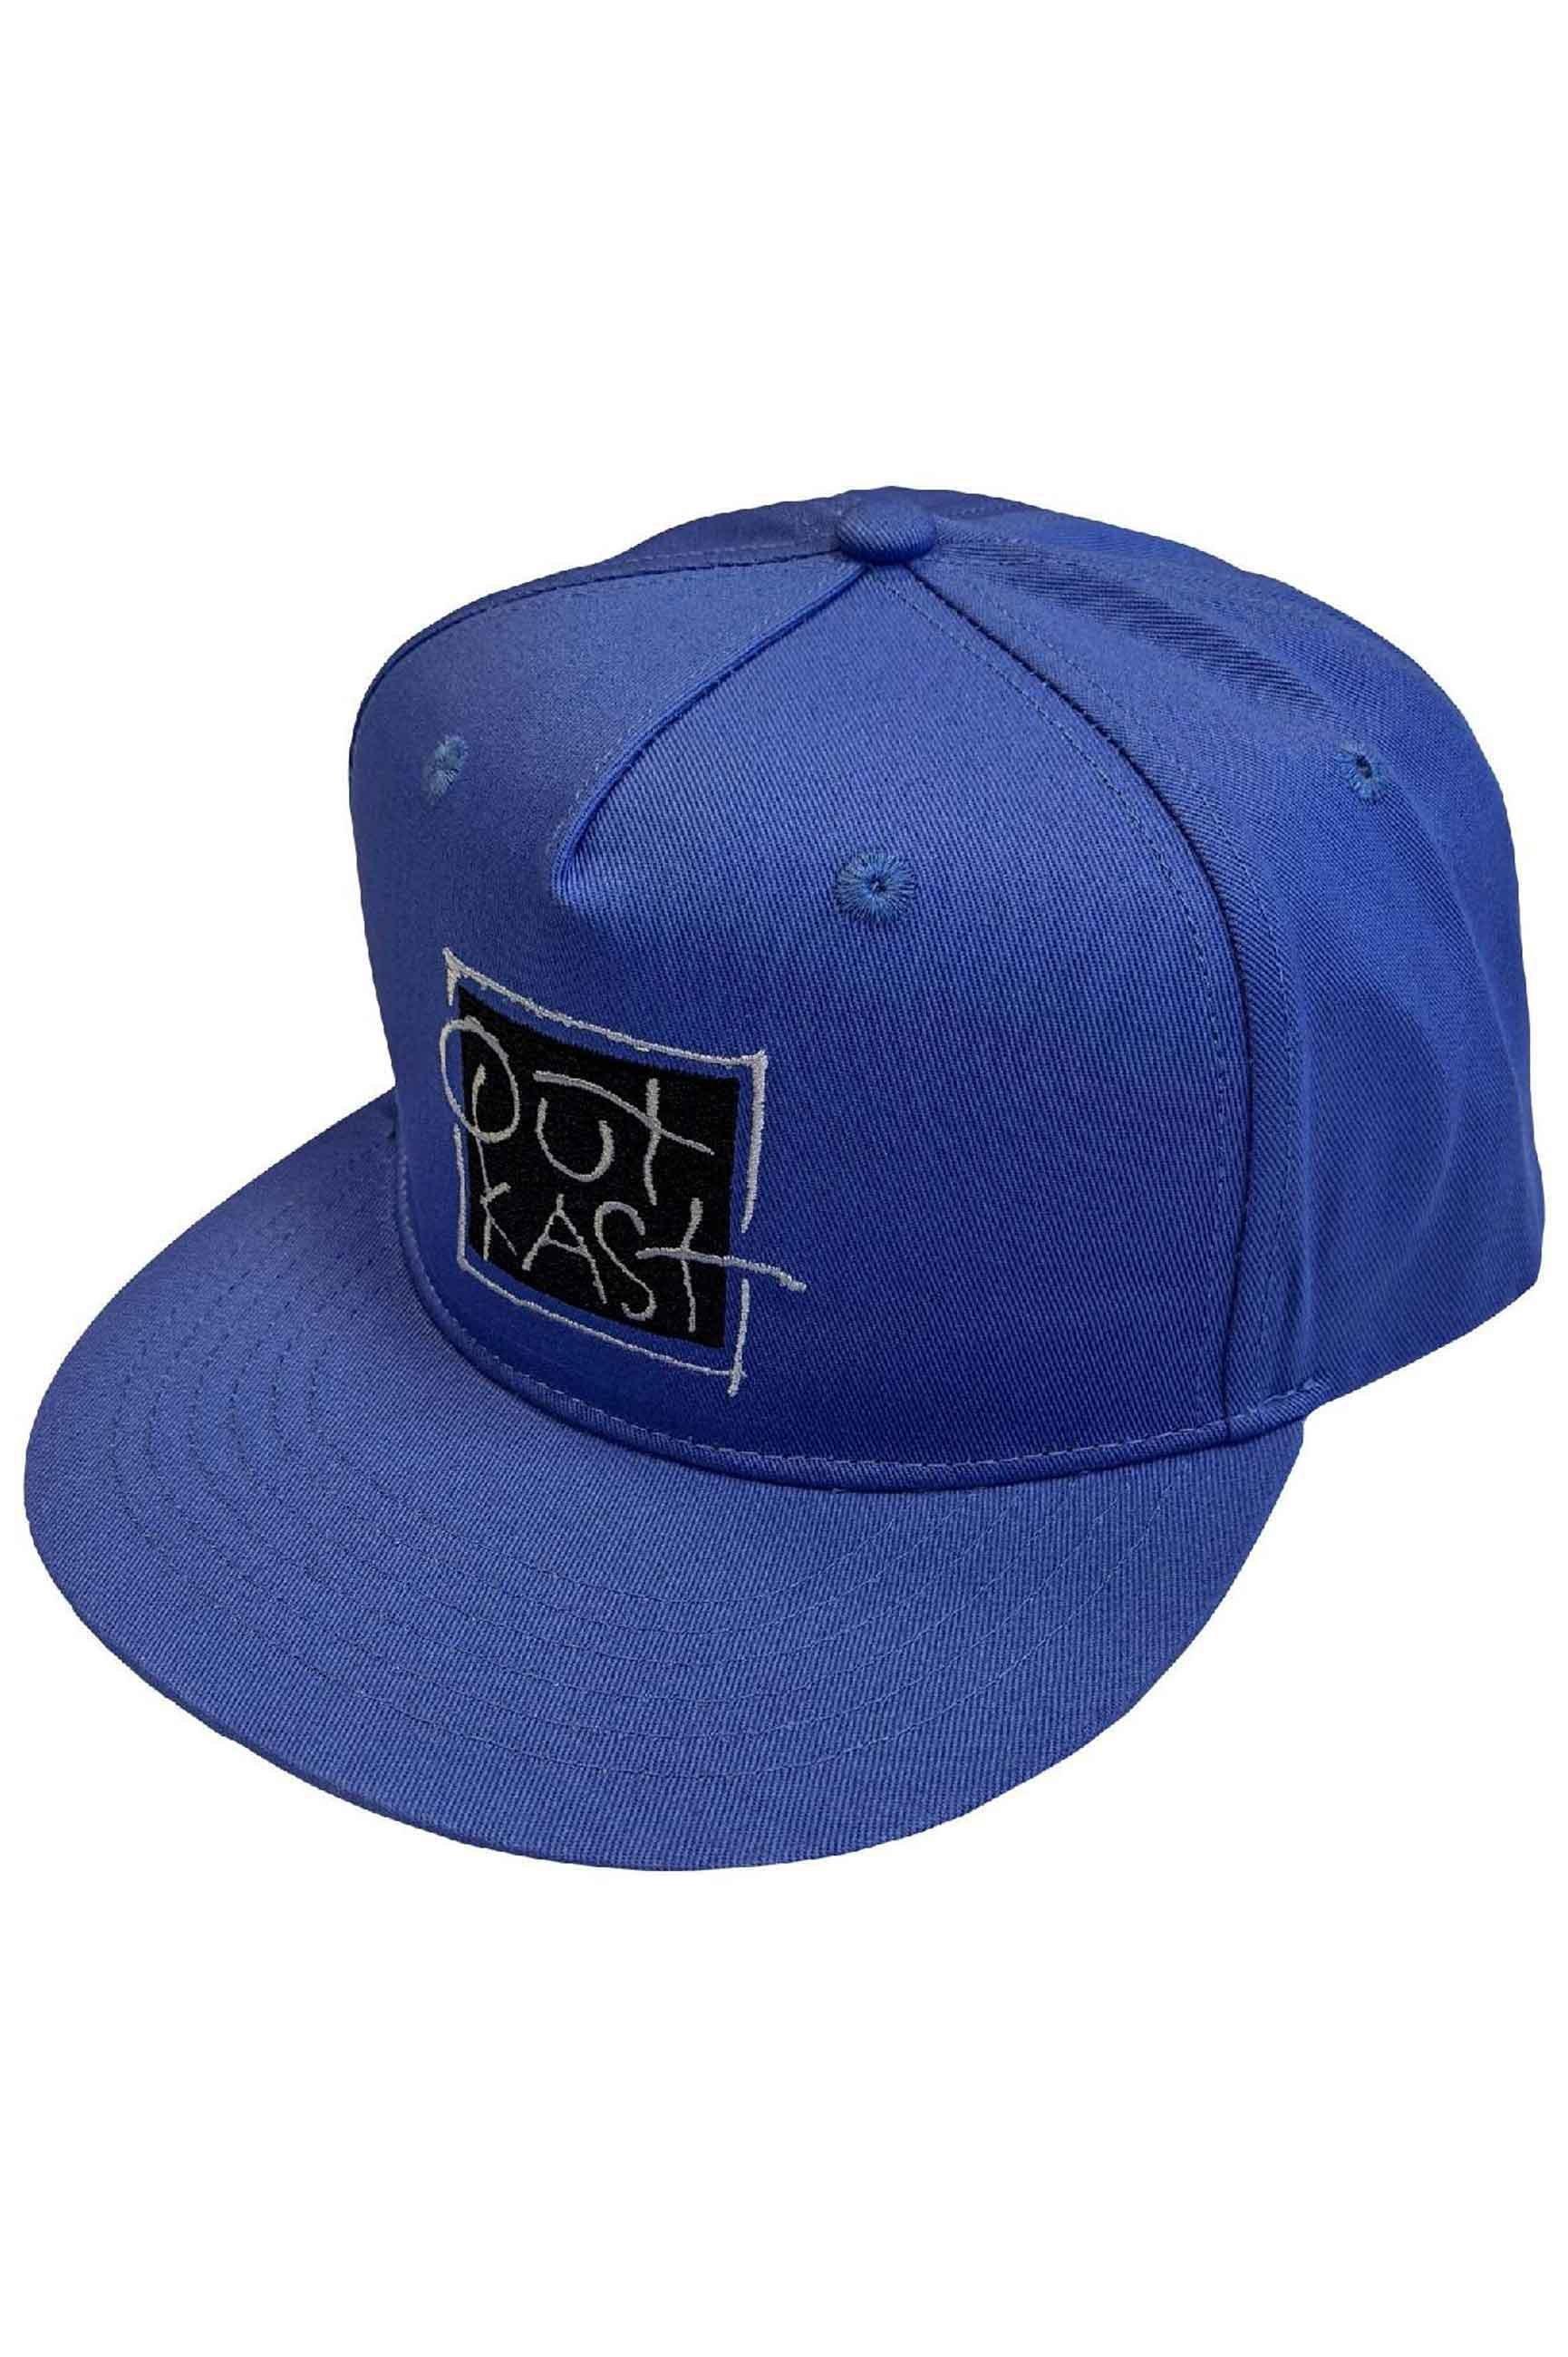 Бейсбольная кепка Snapback с логотипом Box Outkast, синий outkast outkast rosa parks